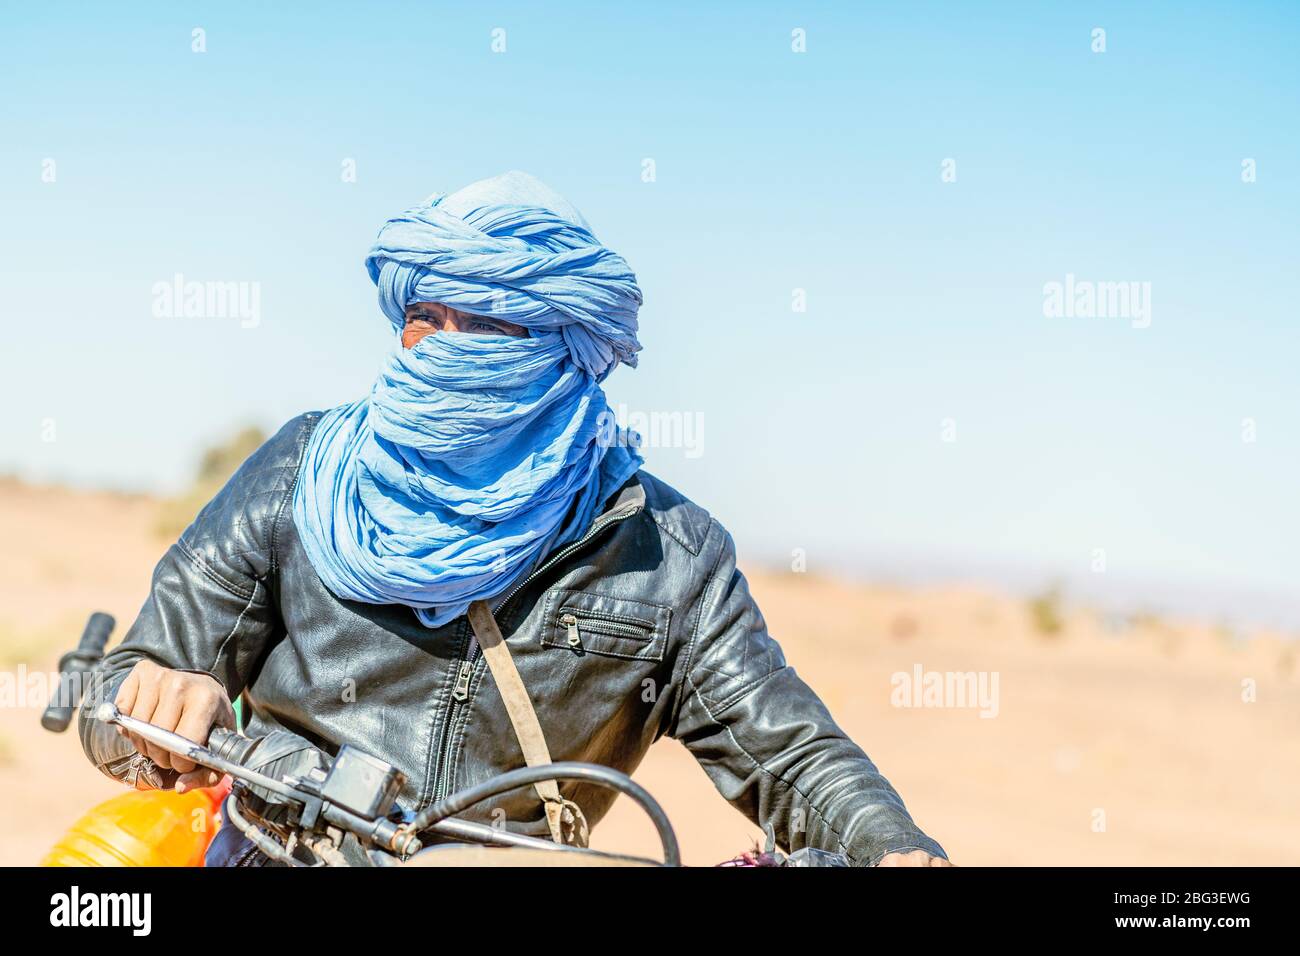 Mhamid, Marokko - 17. März 2020: Ein erstaunliches Porträt eines Beduinenmenschen auf seinem Motorrad, der durch die Sahara fährt. Stockfoto